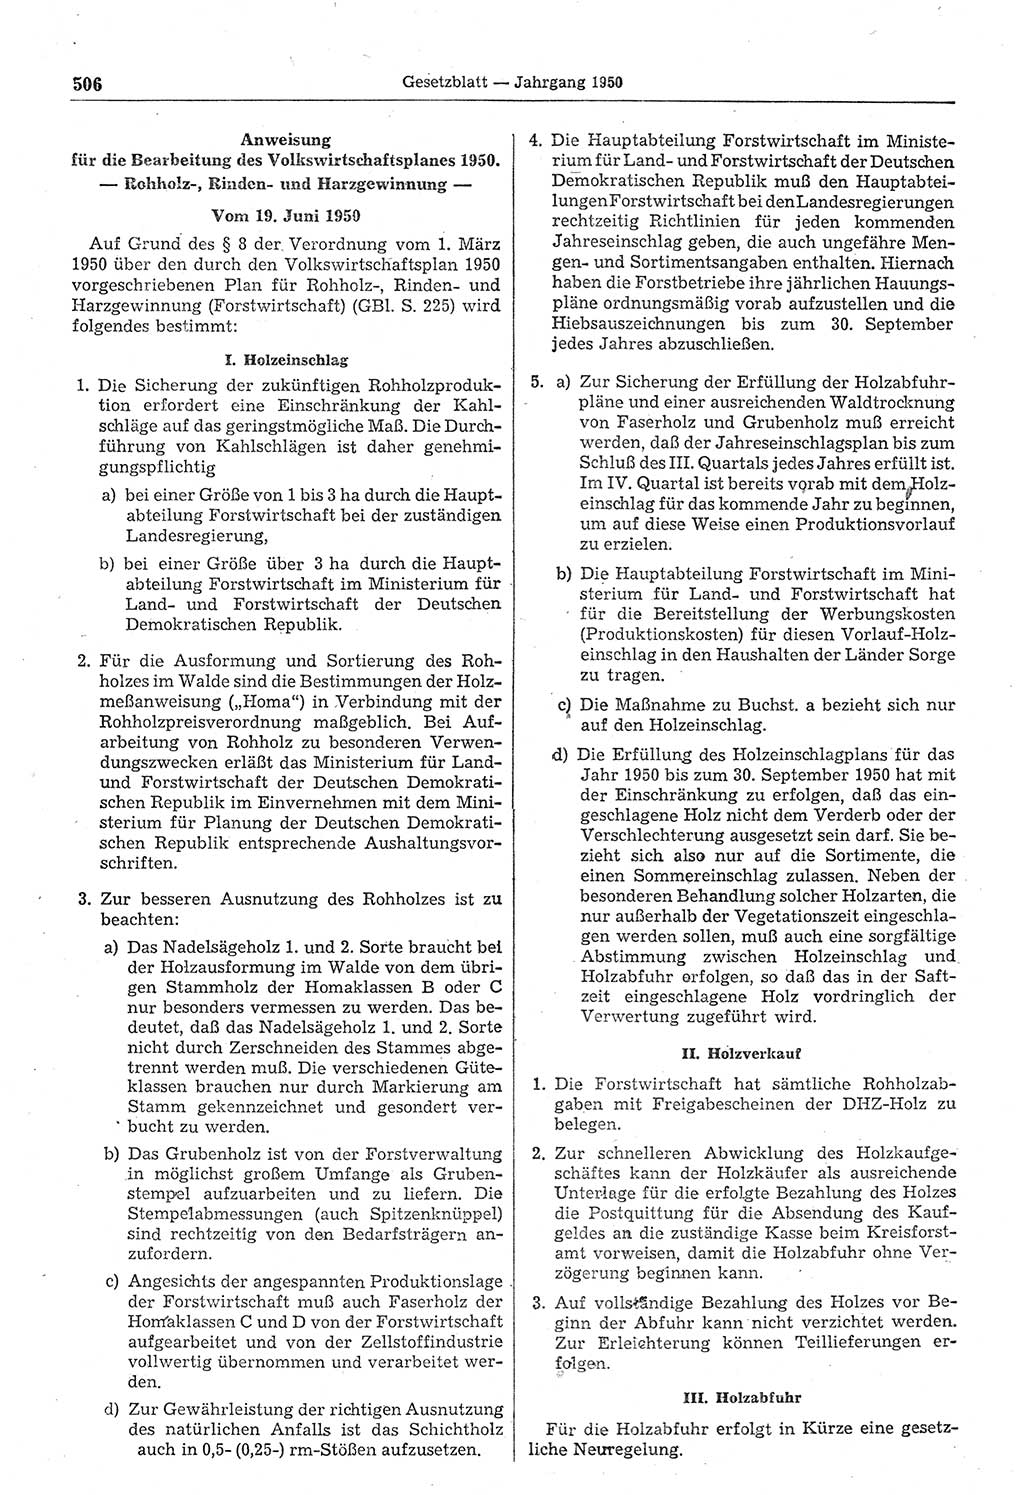 Gesetzblatt (GBl.) der Deutschen Demokratischen Republik (DDR) 1950, Seite 506 (GBl. DDR 1950, S. 506)